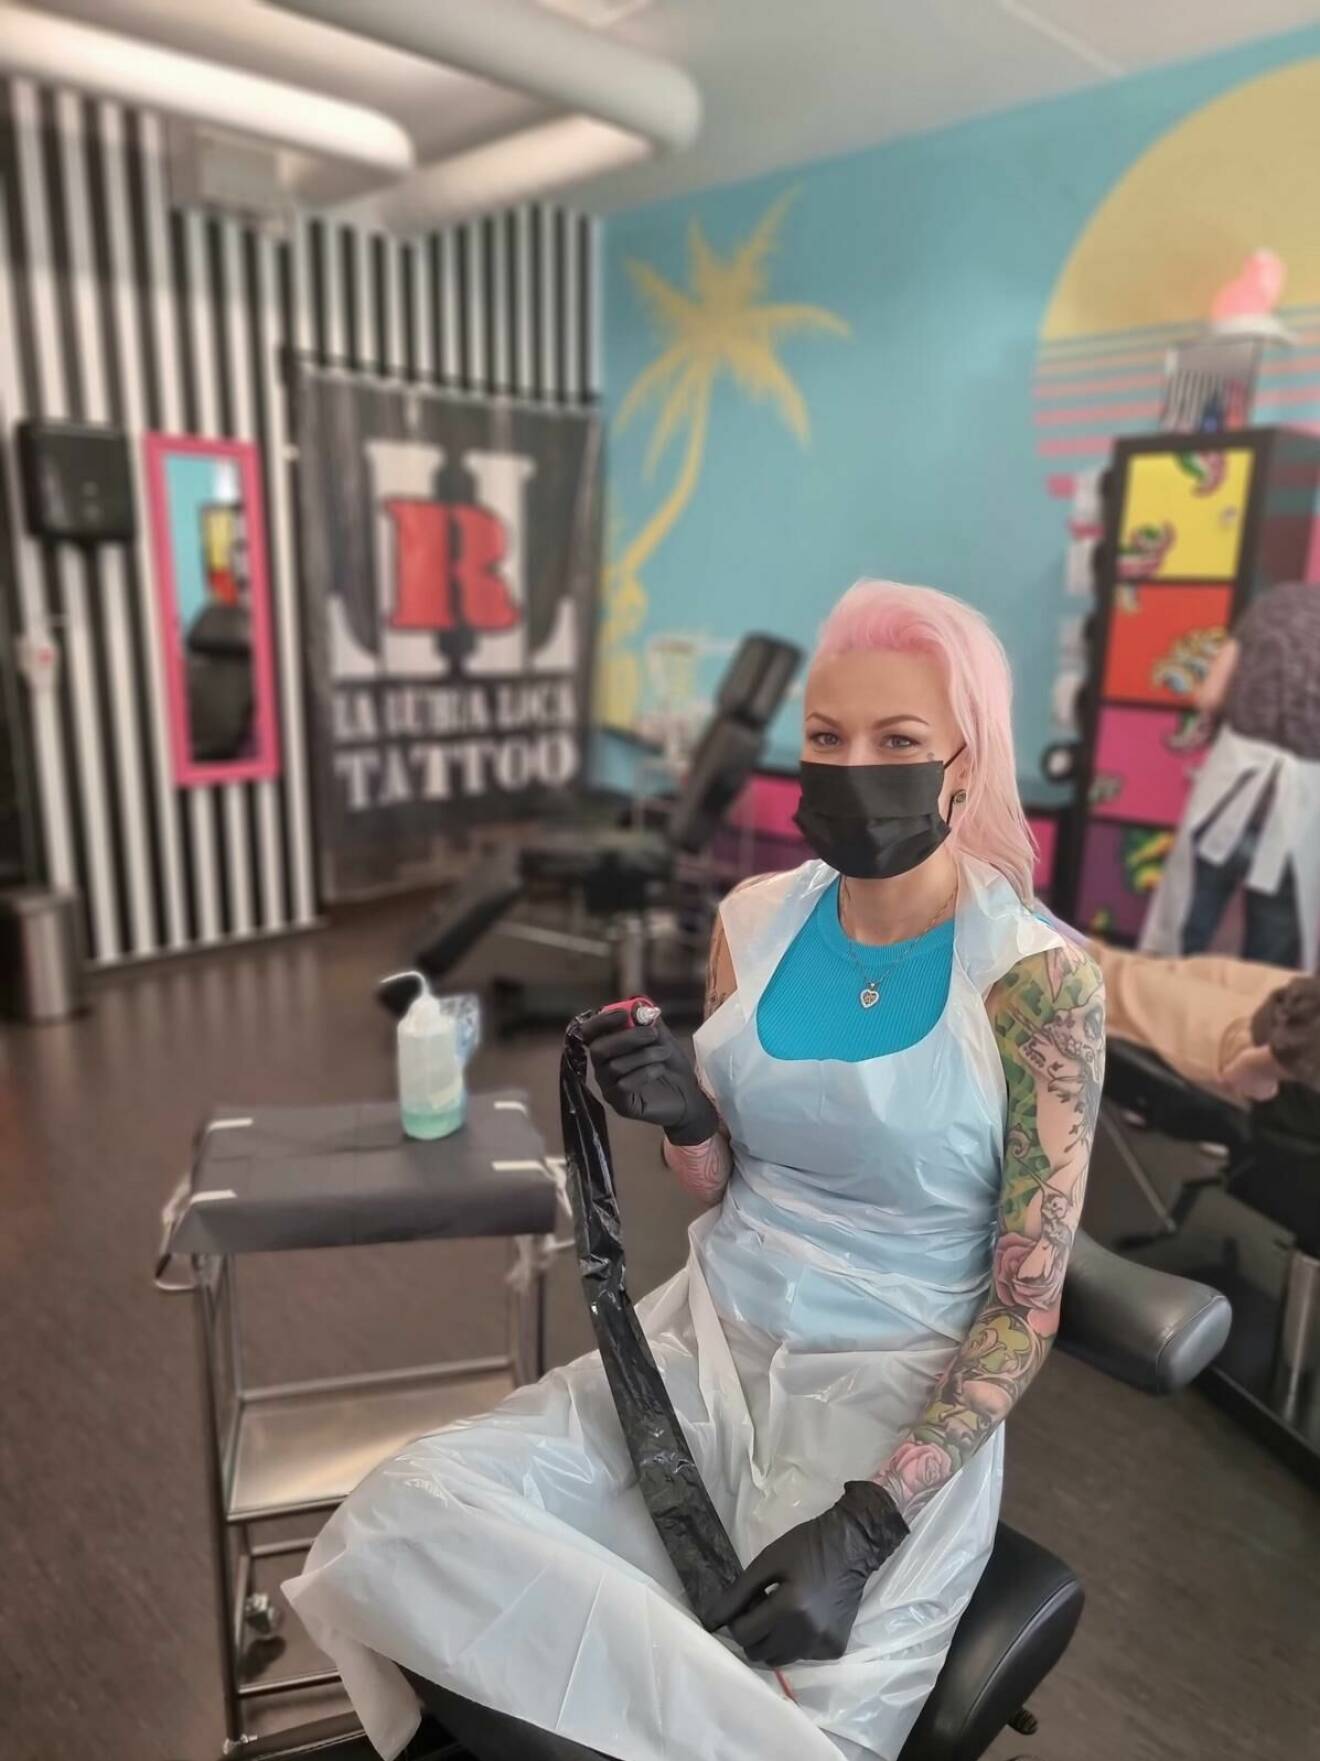 En ung kvinna med rosa hår och munskydd håller i en tatueringsmaskin.